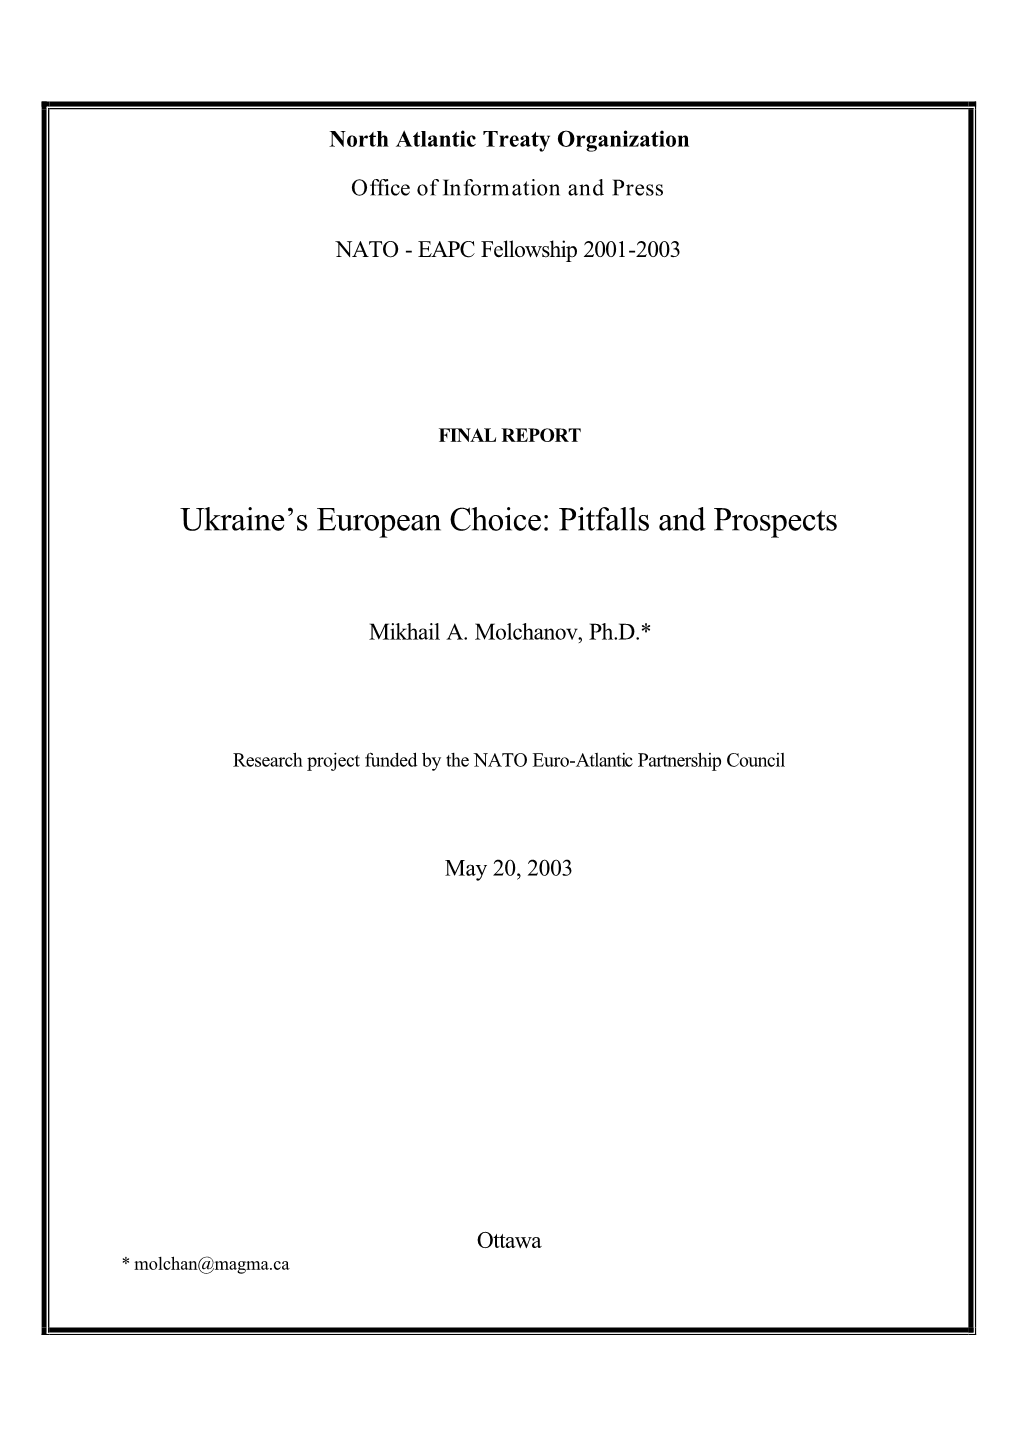 Ukraine's European Choice-Work